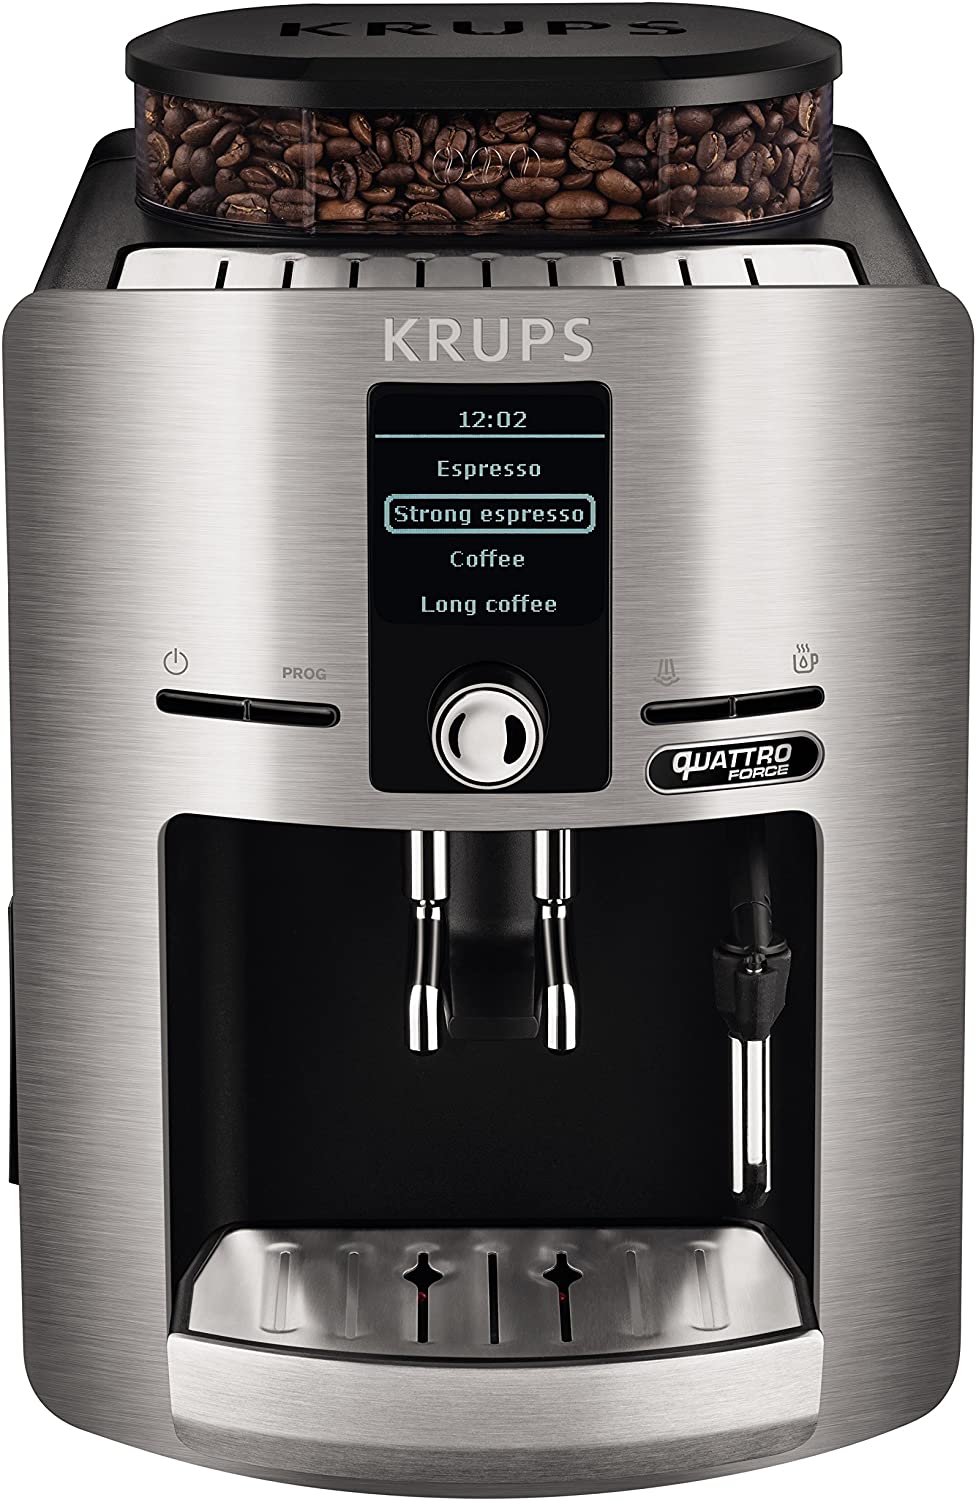 Krups Espresseria QF – Super-Automatic Coffee Machine, Silver